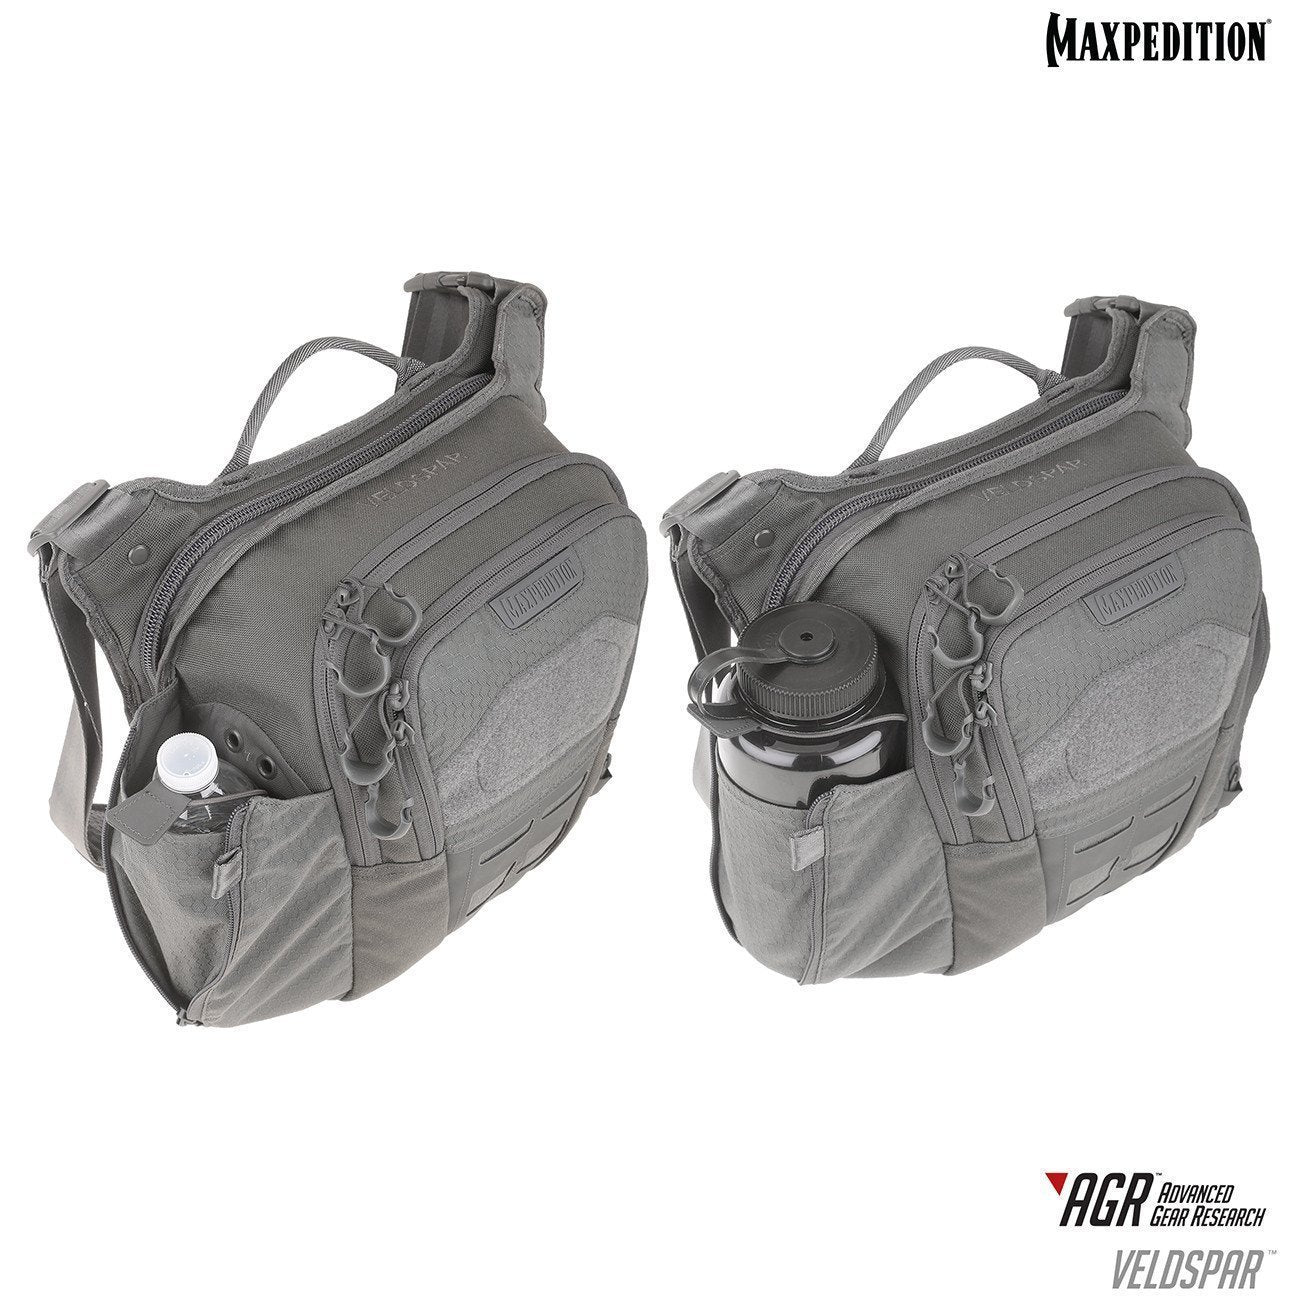 Maxpedition Veldspar Crossbody Shoulder Bag 8L Bags, Packs and Cases Maxpedition Tactical Gear Supplier Tactical Distributors Australia